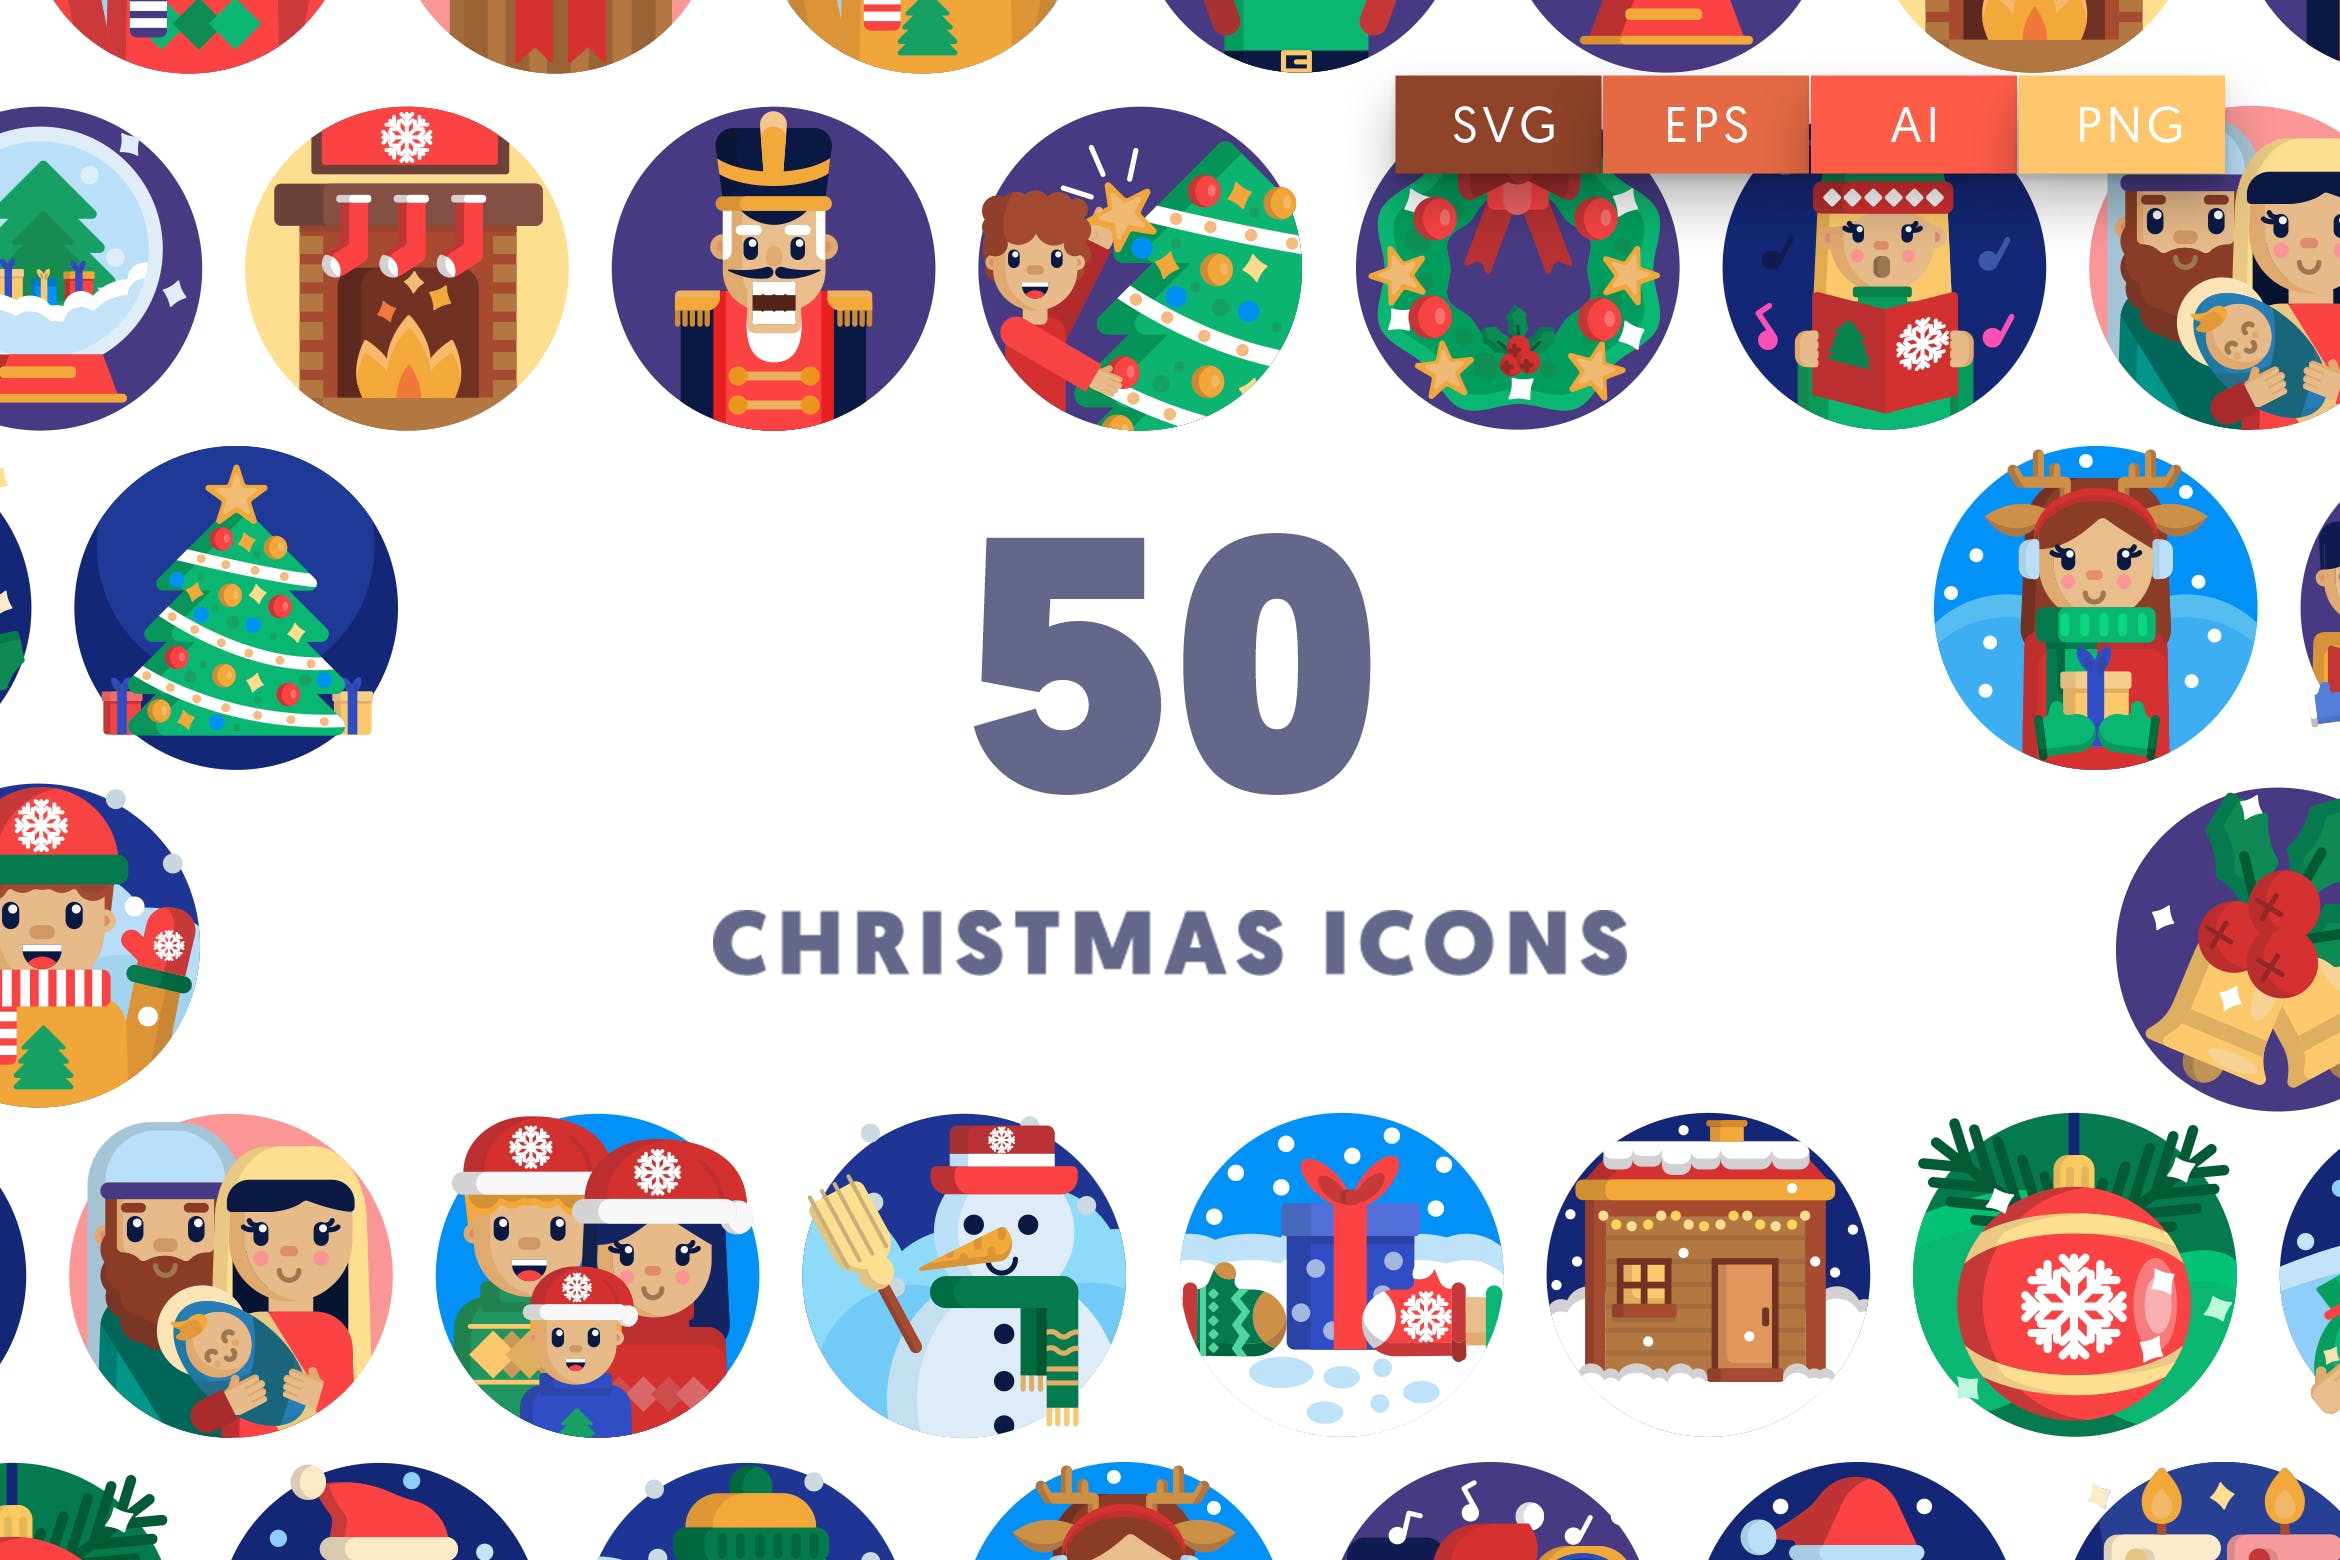 50枚圣诞节节日主题矢量图标素材 50 Christmas Icons插图